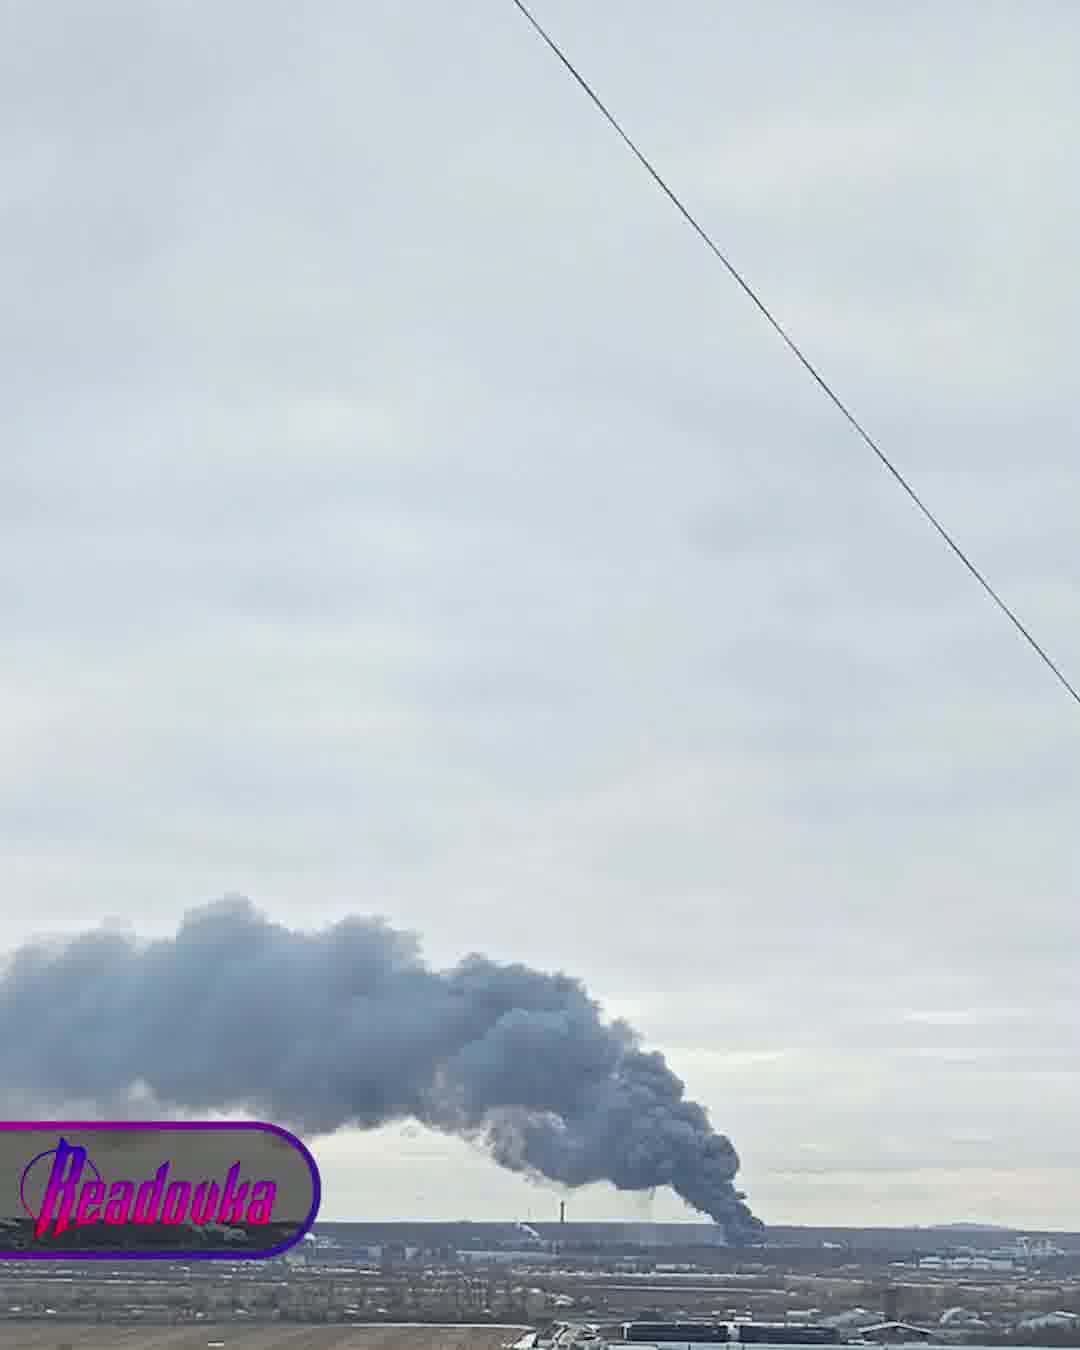 Grote brand nabij de luchthaven Poelkovo